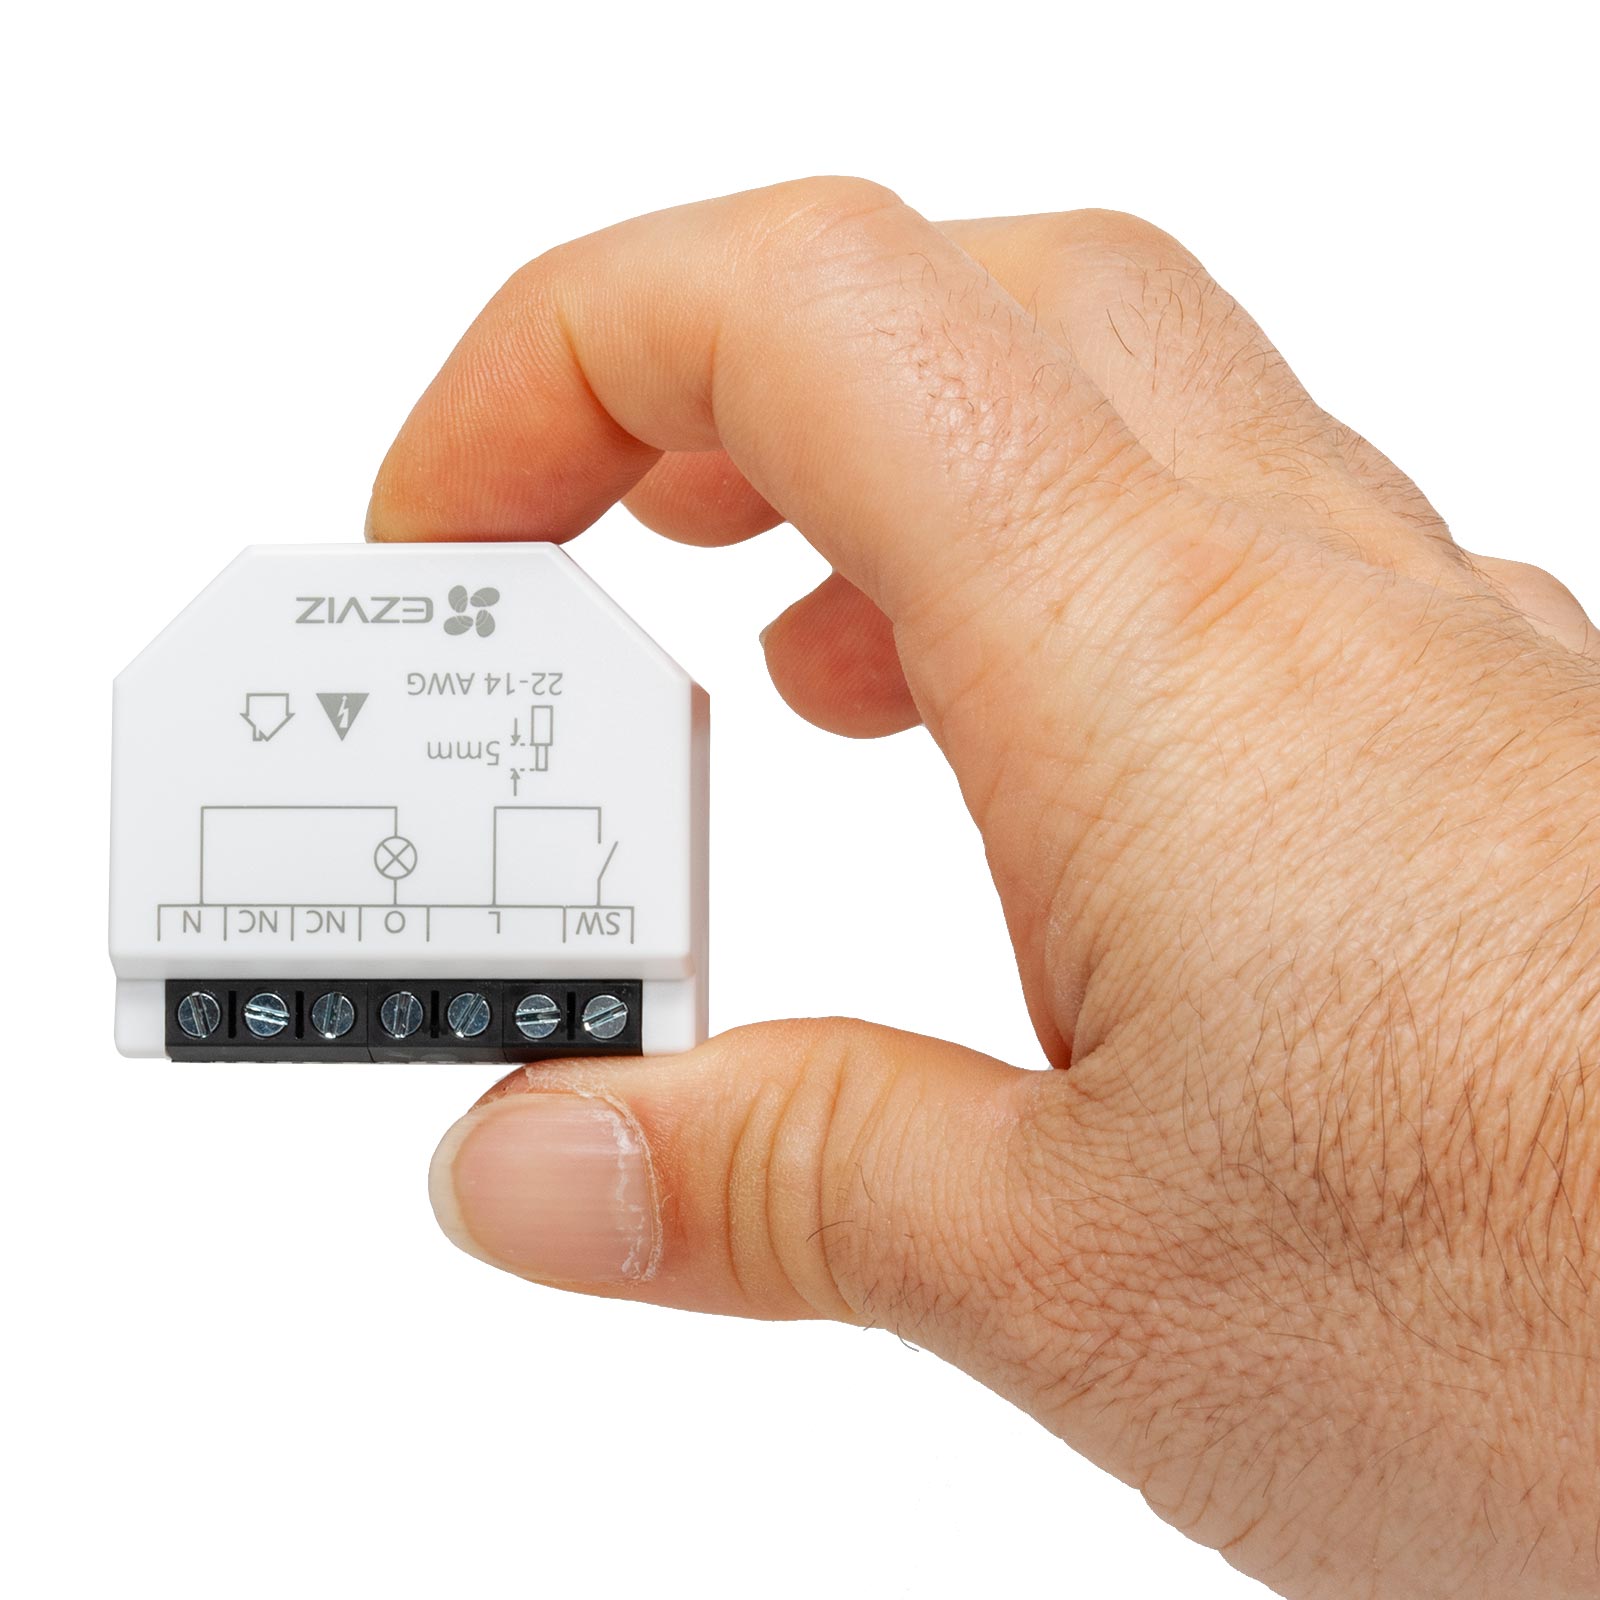 Mini rele EZVIZ impianti domotica interruttore 1 CH canale SMART WiFi controllo luci compatibile APP Alexa e Google